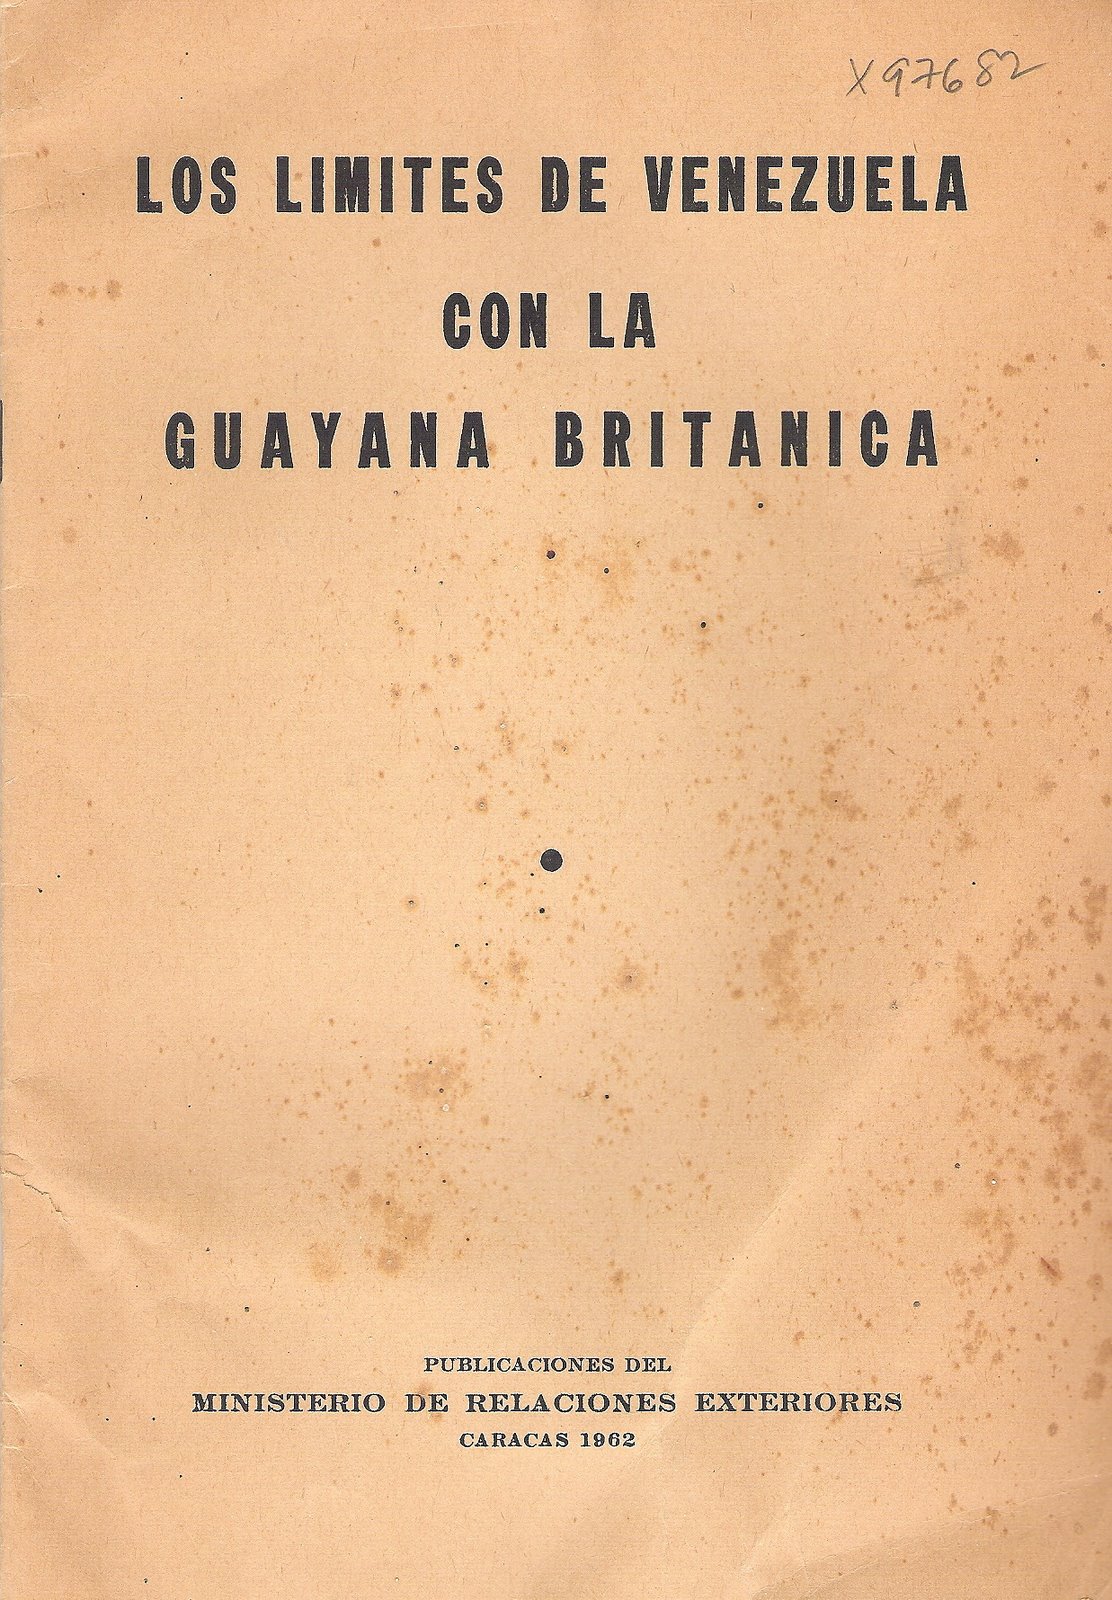 [1962-Los+Limites+de+Venezuela+con+la+Guayana+Britanica.jpg]